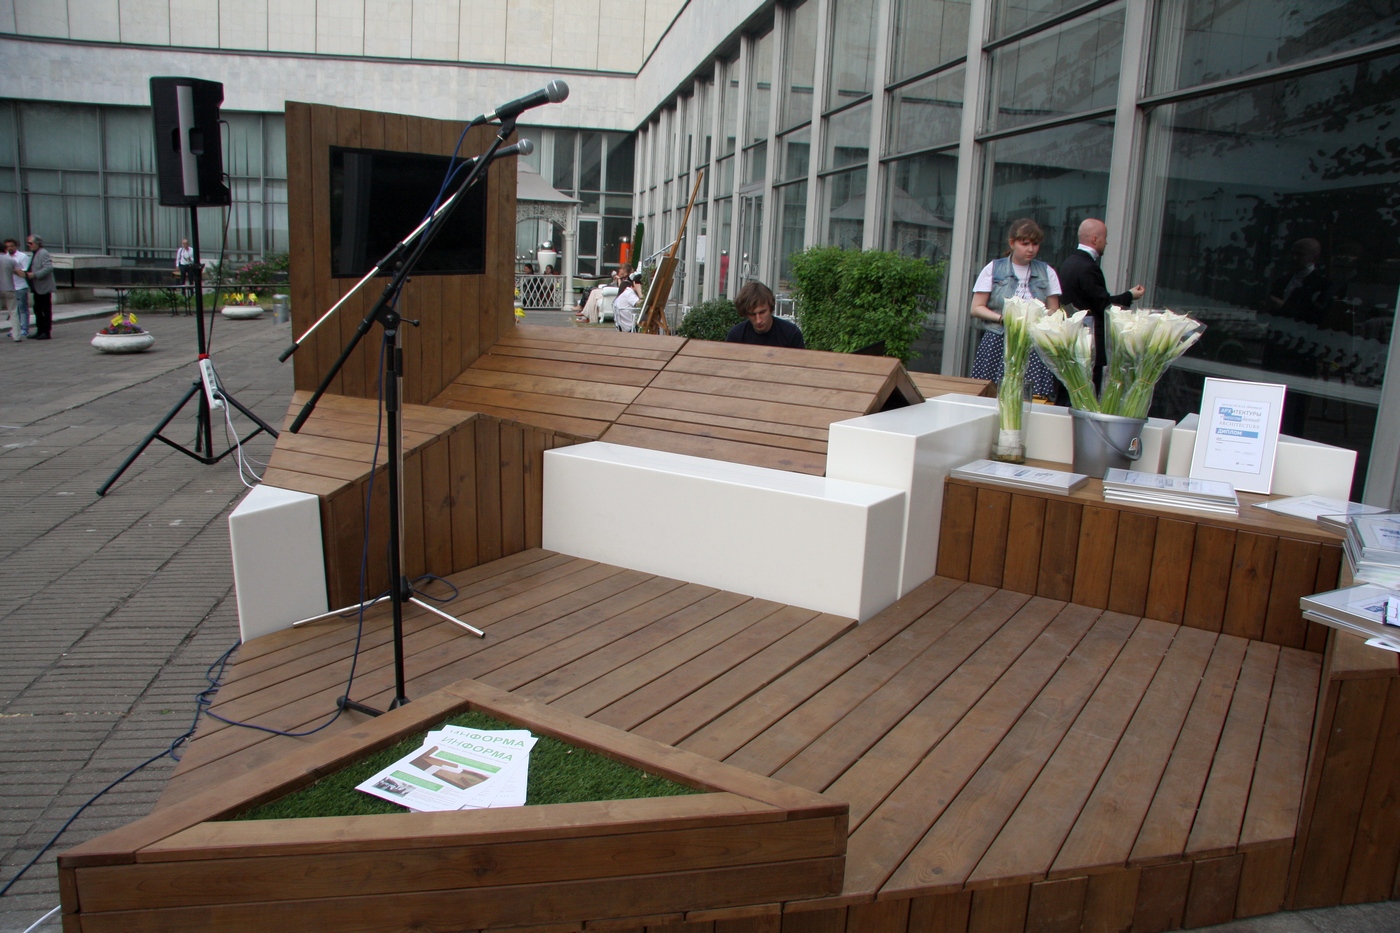 2014. Международная выставка архитектуры и дизайна Арх Москва. Информа использовалась в качестве площадки для награждения.